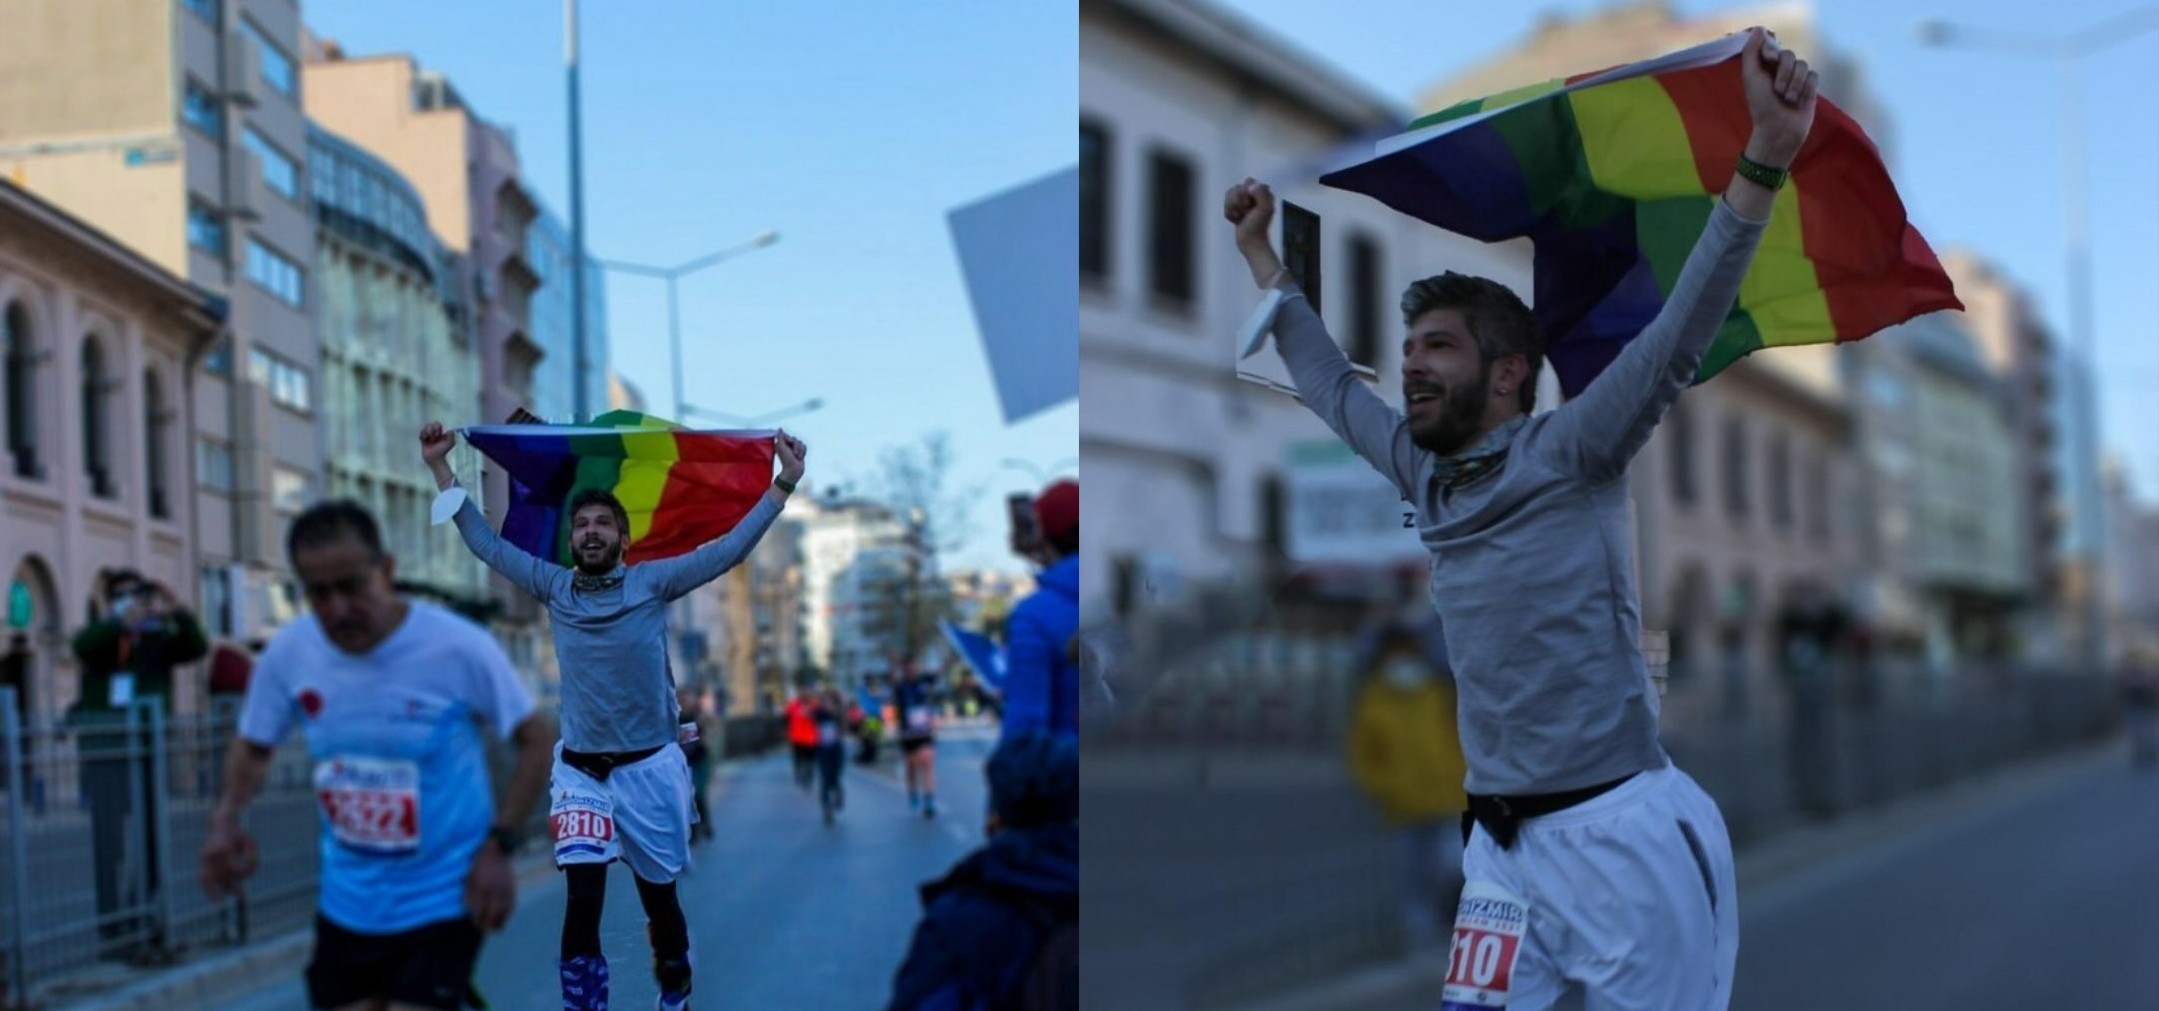 Maratonİzmir’de gökkuşağı bayrağı dalgalandı Kaos GL - LGBTİ+ Haber Portalı